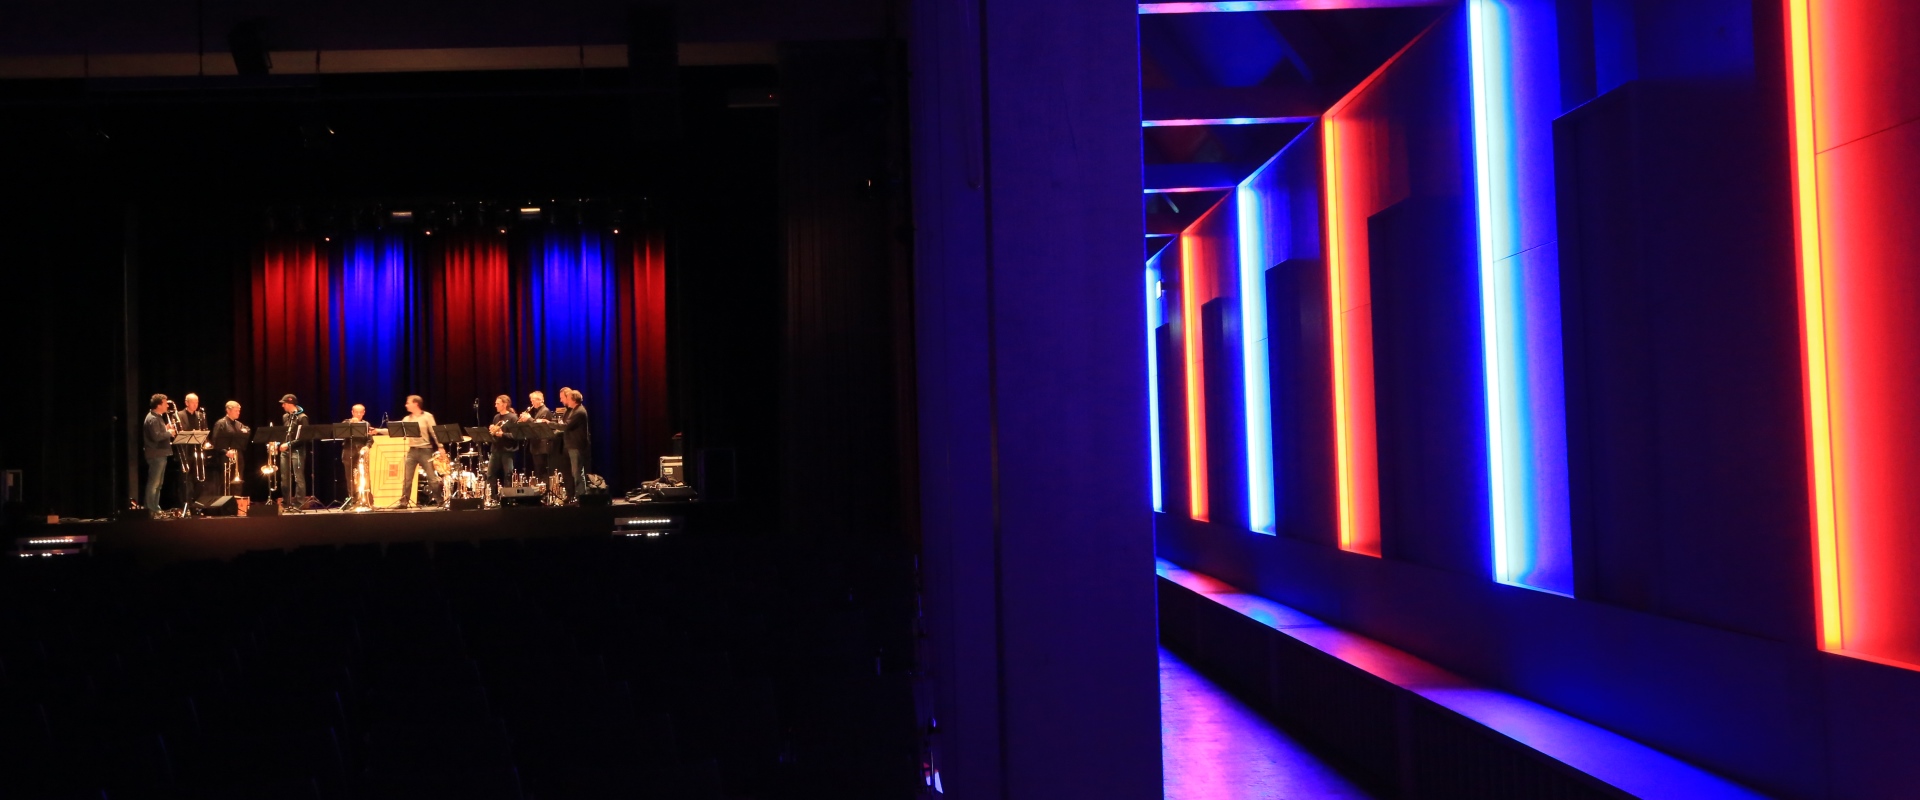 Die Beleuchtung in blau und rot im Raiffeisen Saal bei einem Auftritt im Altöttinger Forum.